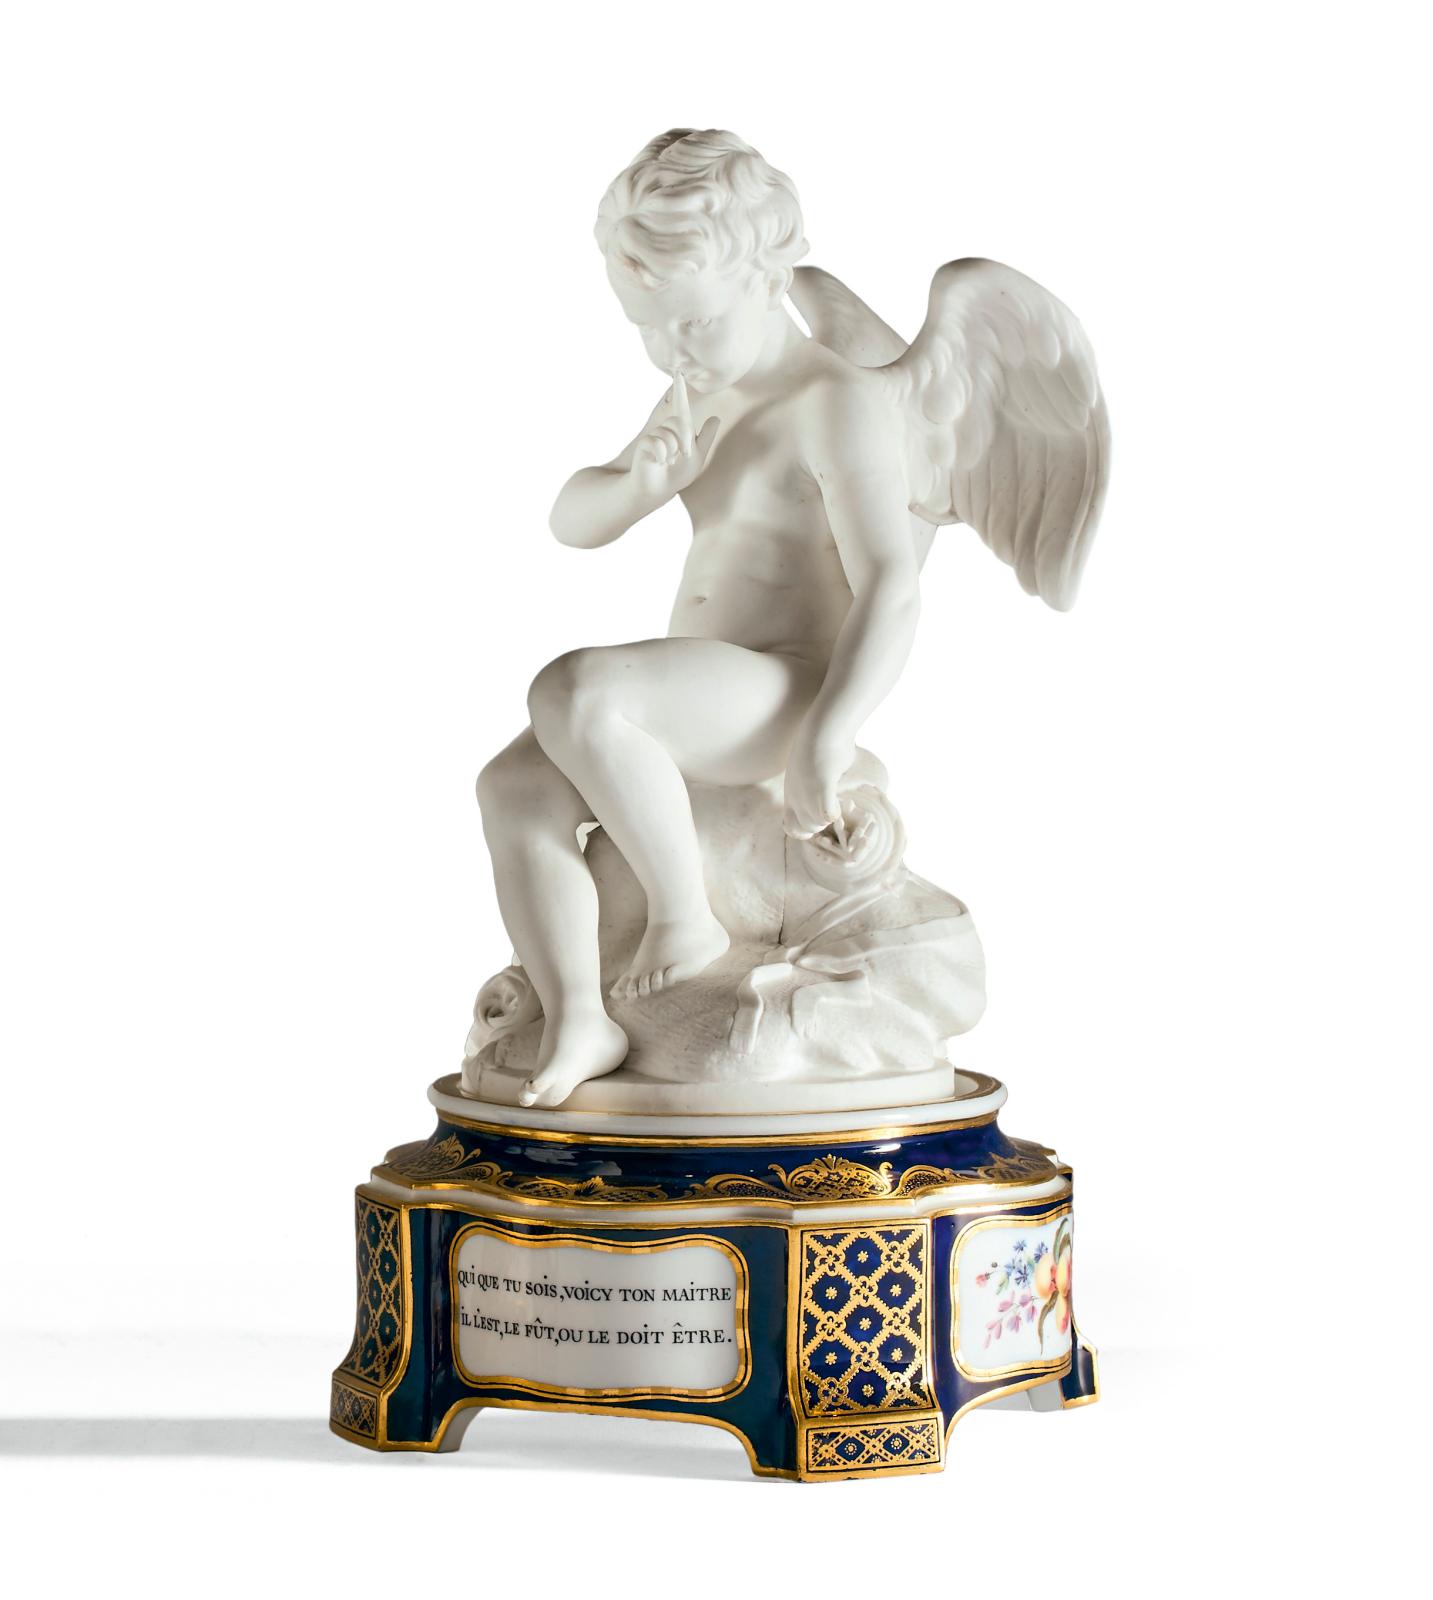 Sèvres, XVIIIe siècle. Statuette en biscuit de porcelaine tendre représentant l’Amour menaçant ou l’Amour Falconet, sur un socle en porcelaine tendre 